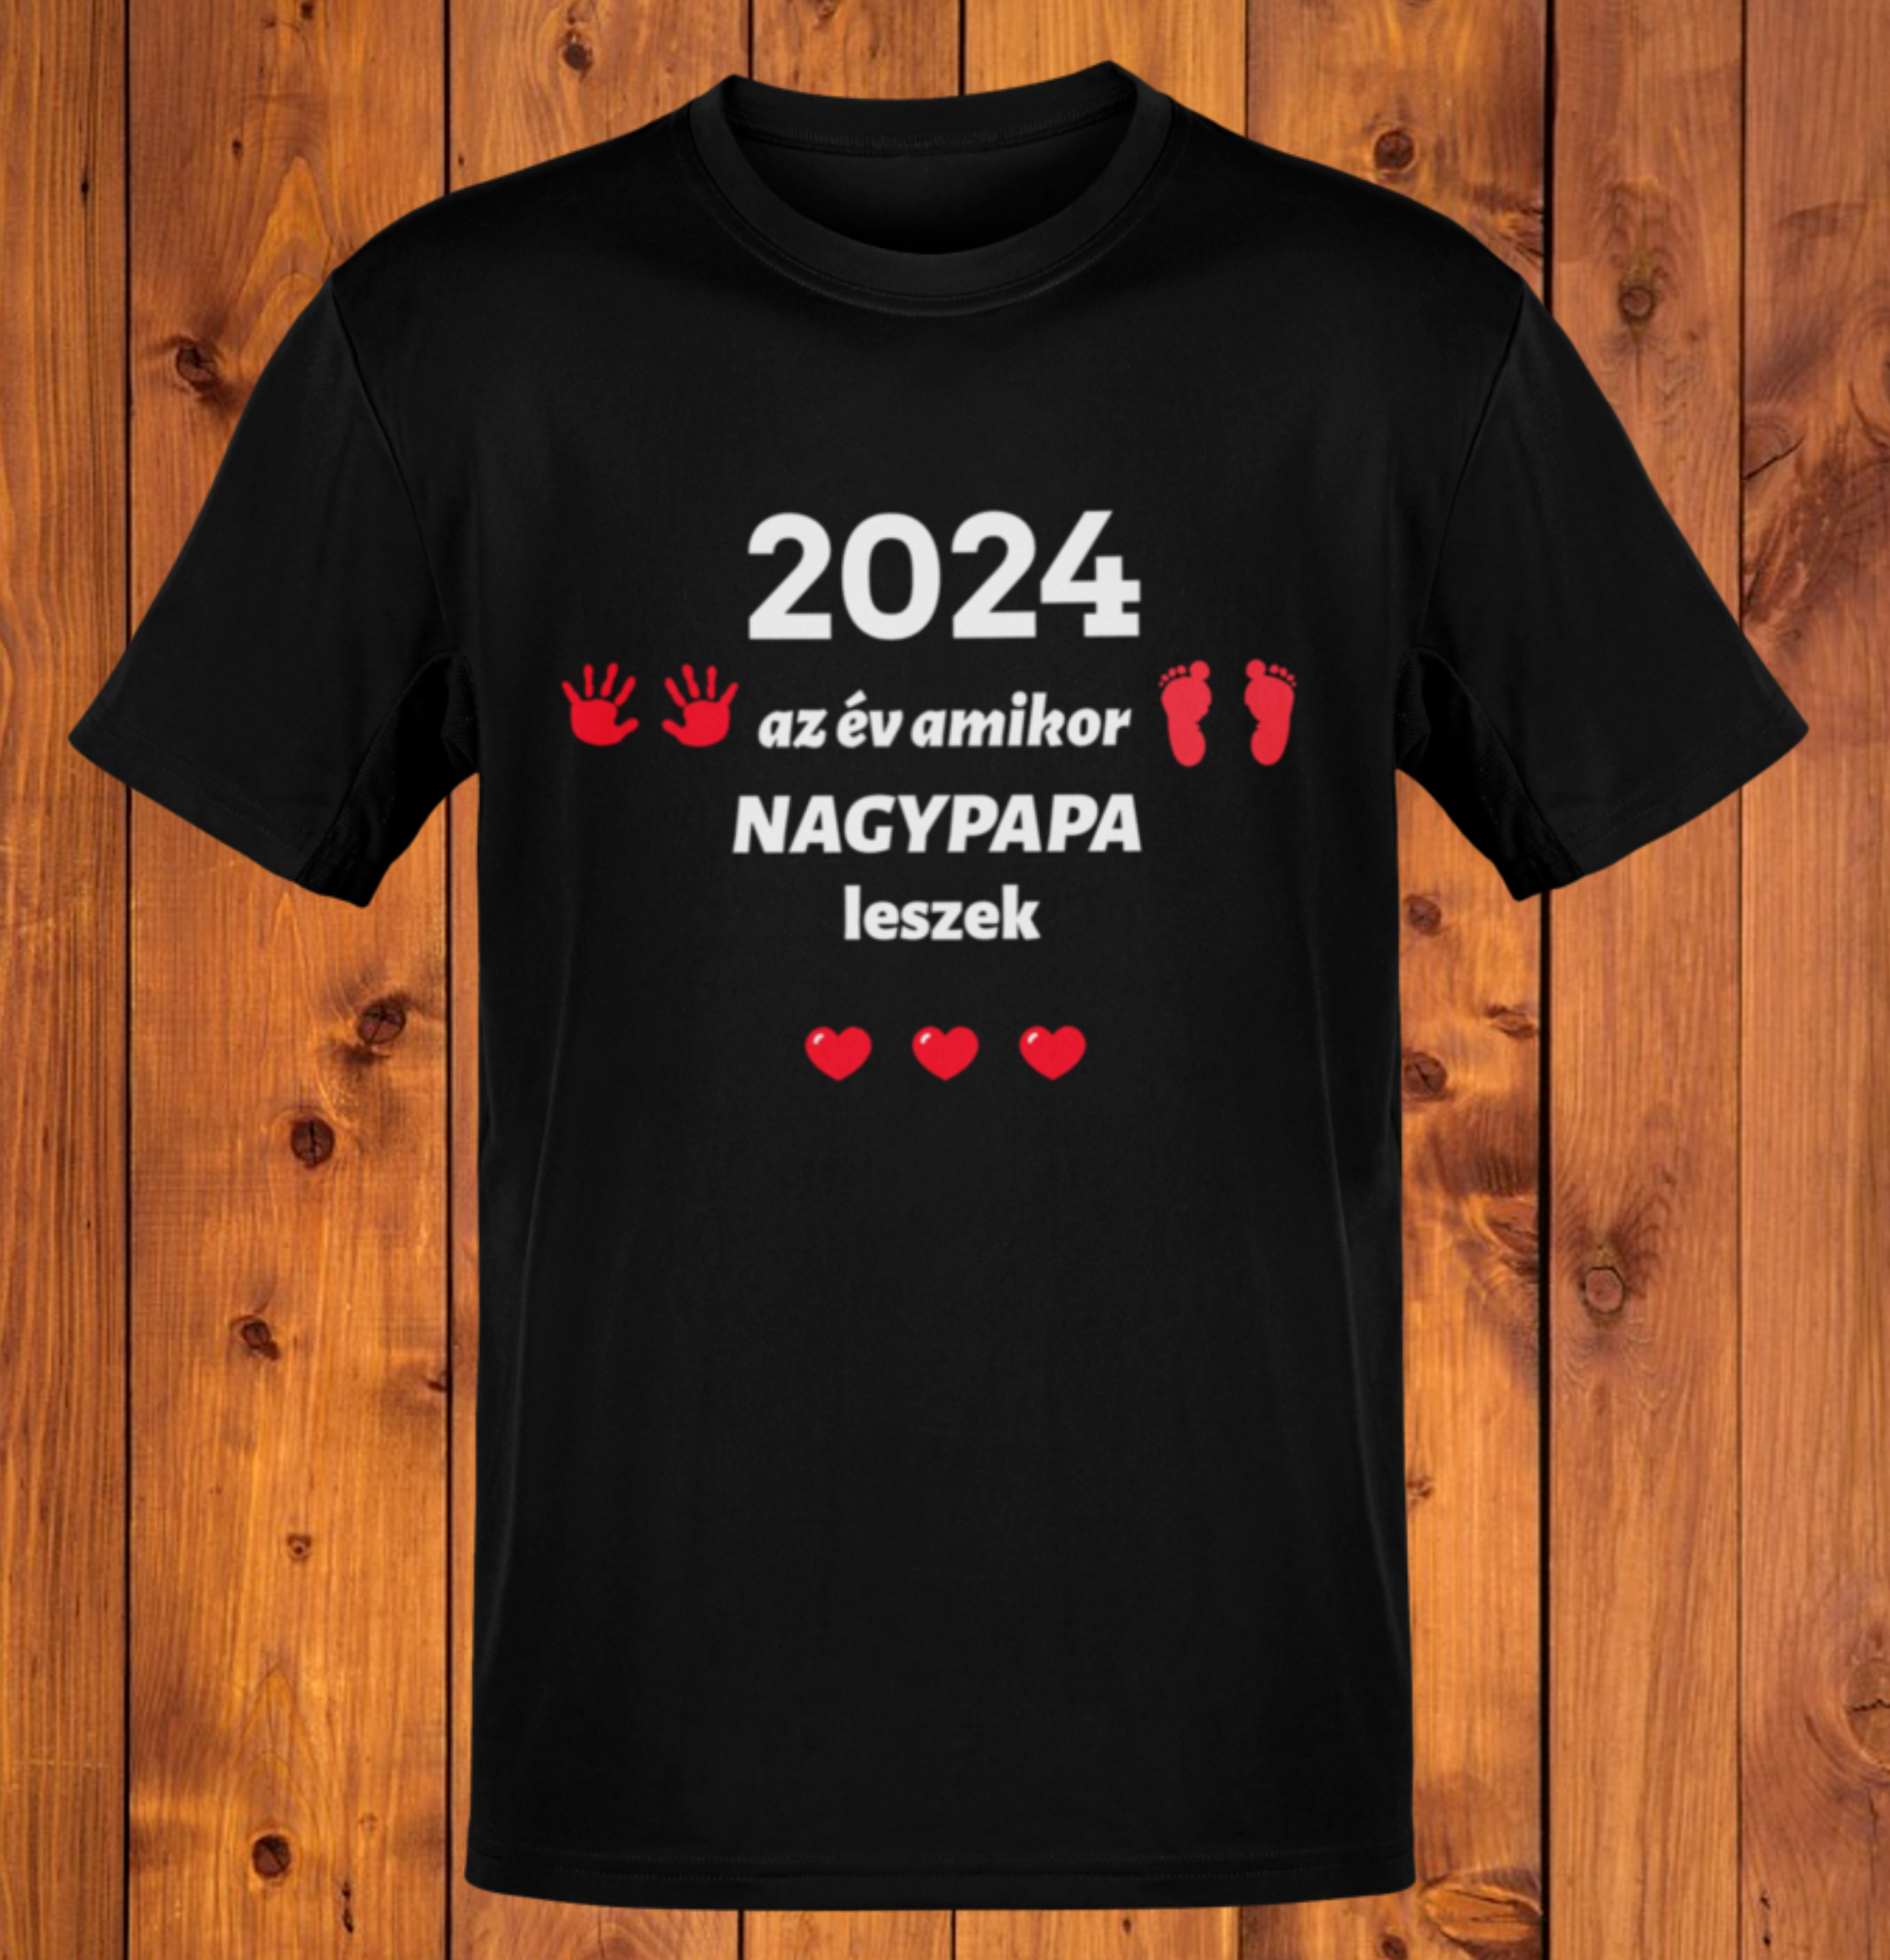 2024 az év amikor NAGYPAPA leszek (fekete póló piros sz)